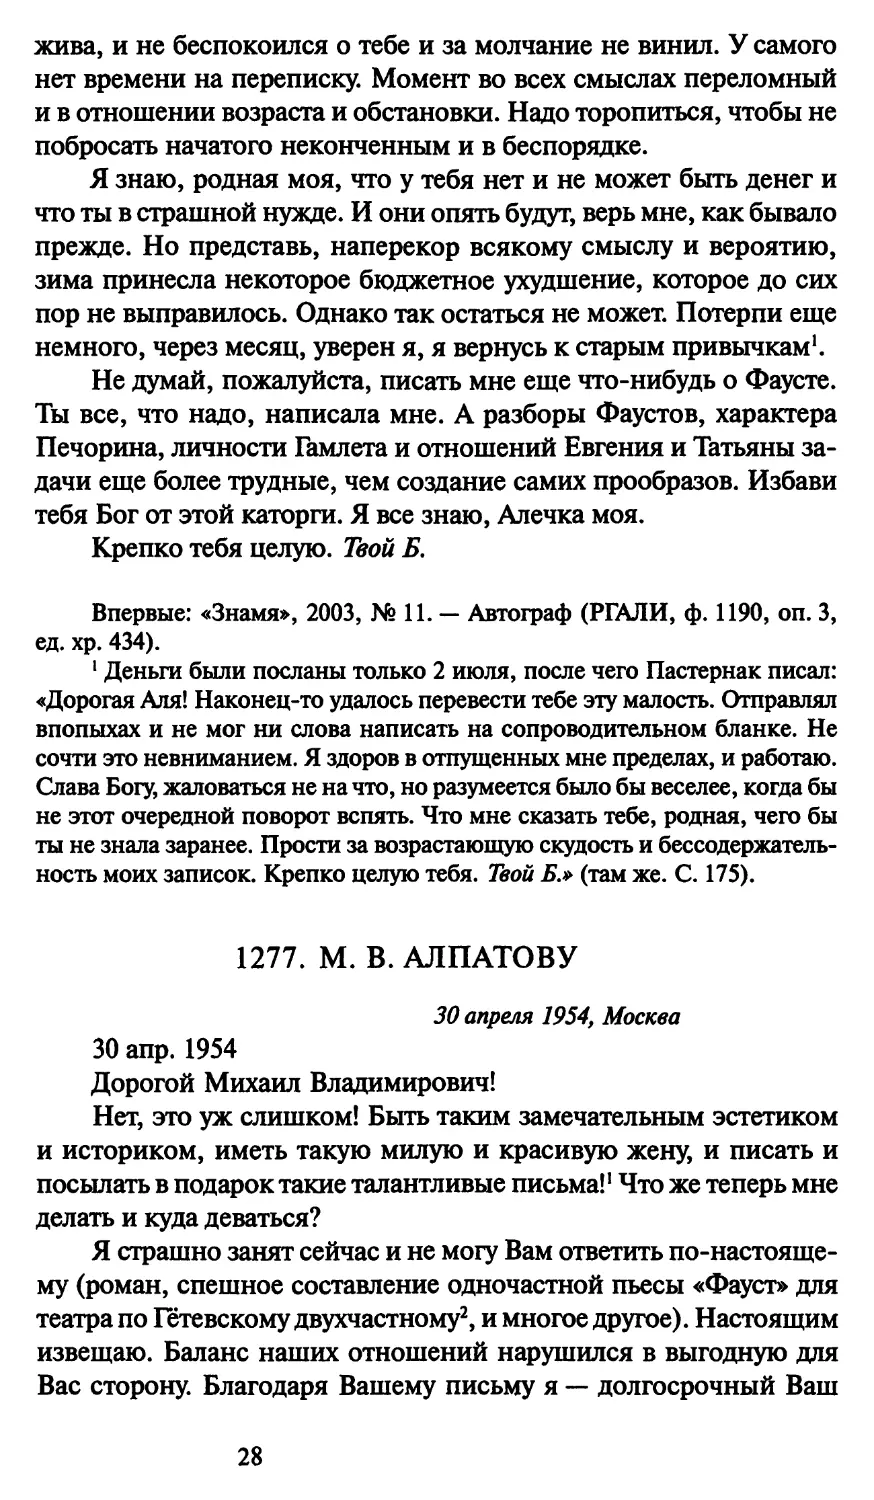 1277. М. В. Алпатову 30 апреля 1954